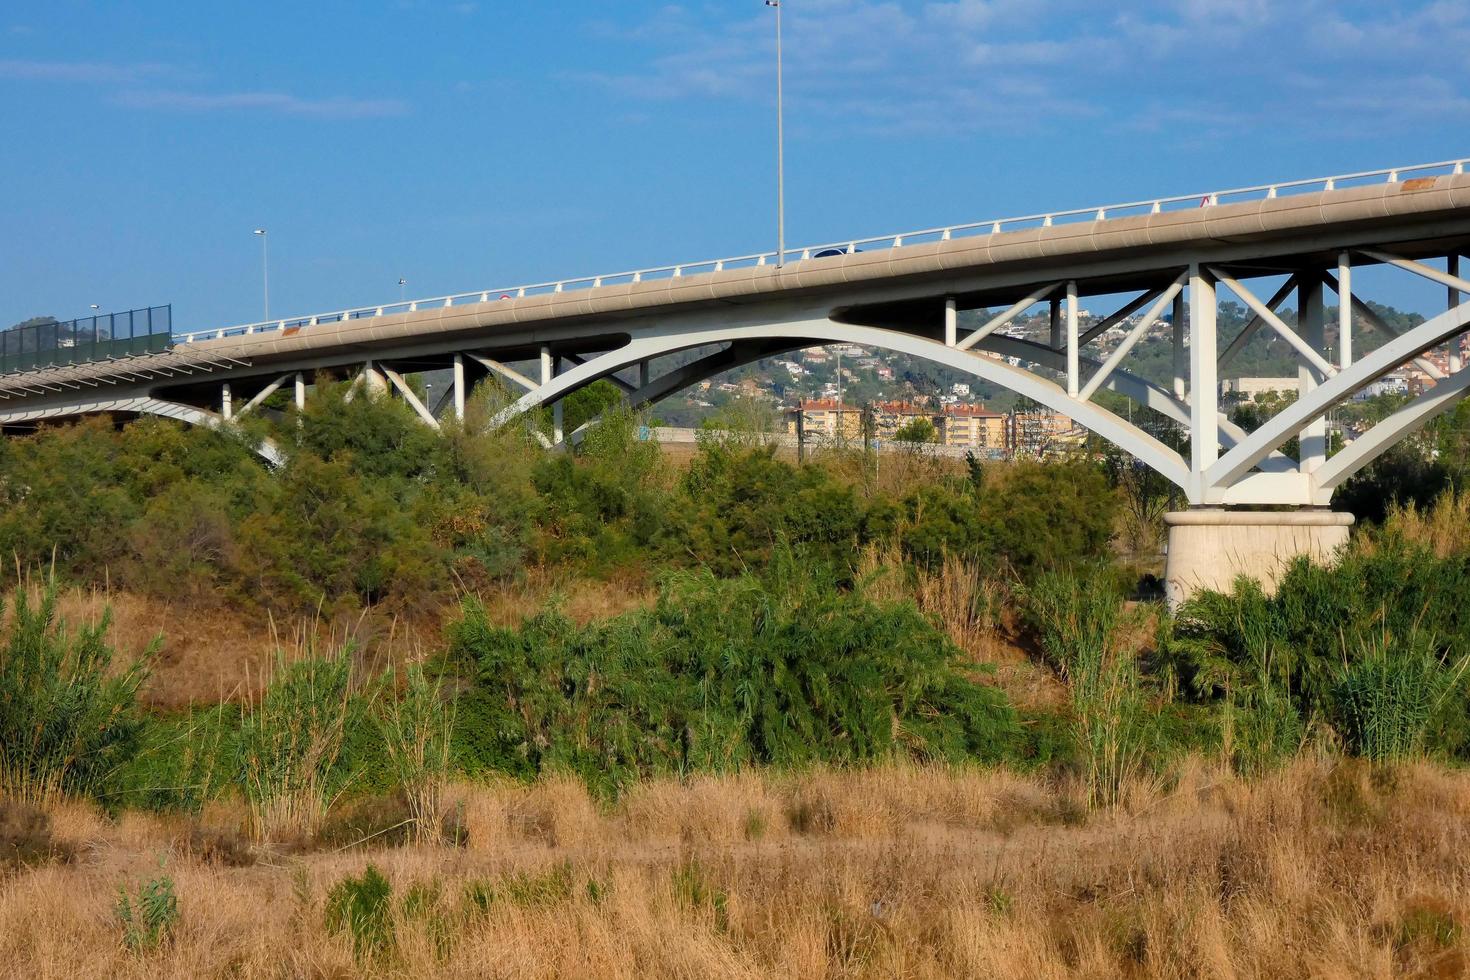 modern flod bro, ett teknik bedrift den där tusentals av fordon passera över dagligen foto